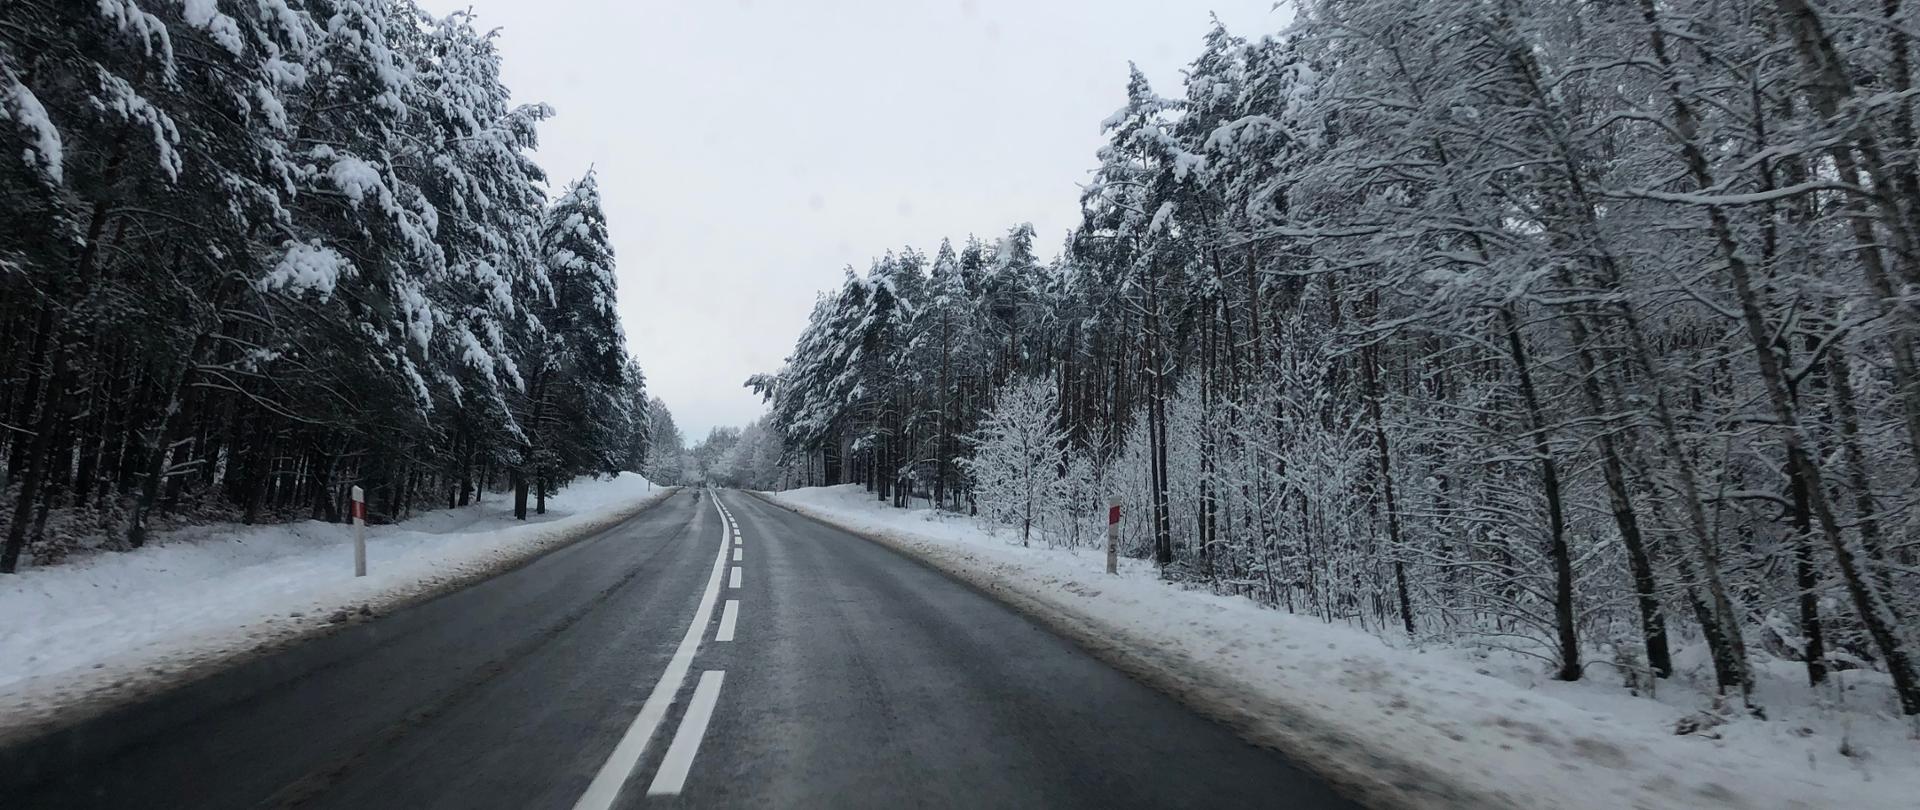 Droga krajowa w aurze zimowej o nawierzchni czarnej, mokrej. Po bokach lasy, drzewa i pobocza pokryte śniegiem.